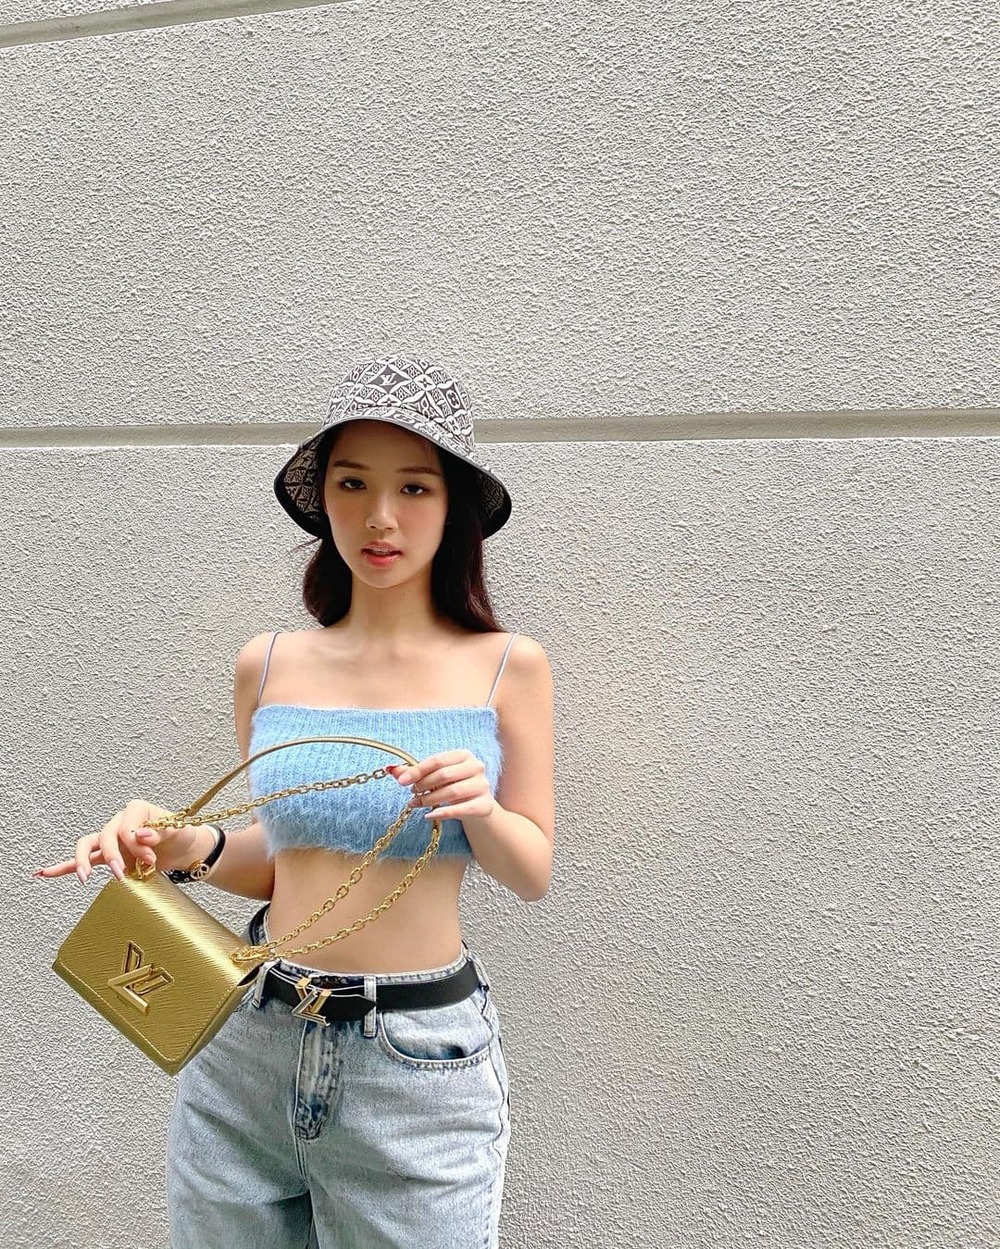  
Bức ảnh street style chứng minh body thu hút của Amee. (Ảnh: Instagram)